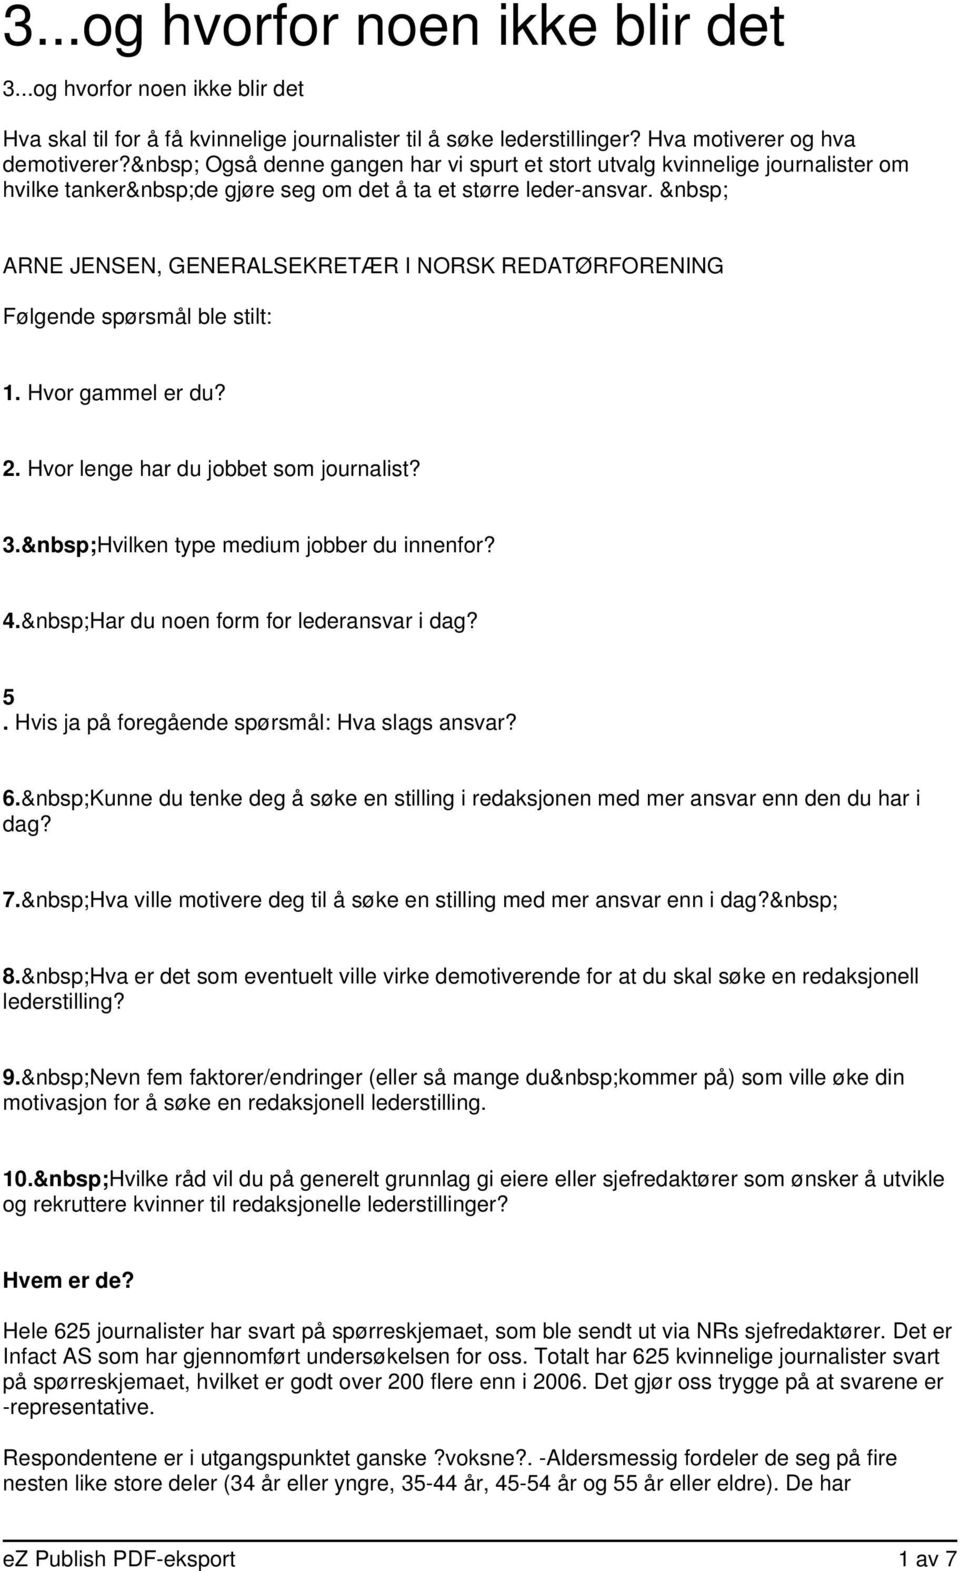 ARNE JENSEN, GENERALSEKRETÆR I NORSK REDATØRFORENING Følgende spørsmål ble stilt: 1. Hvor gammel er du? 2. Hvor lenge har du jobbet som journalist? 3. Hvilken type medium jobber du innenfor? 4.